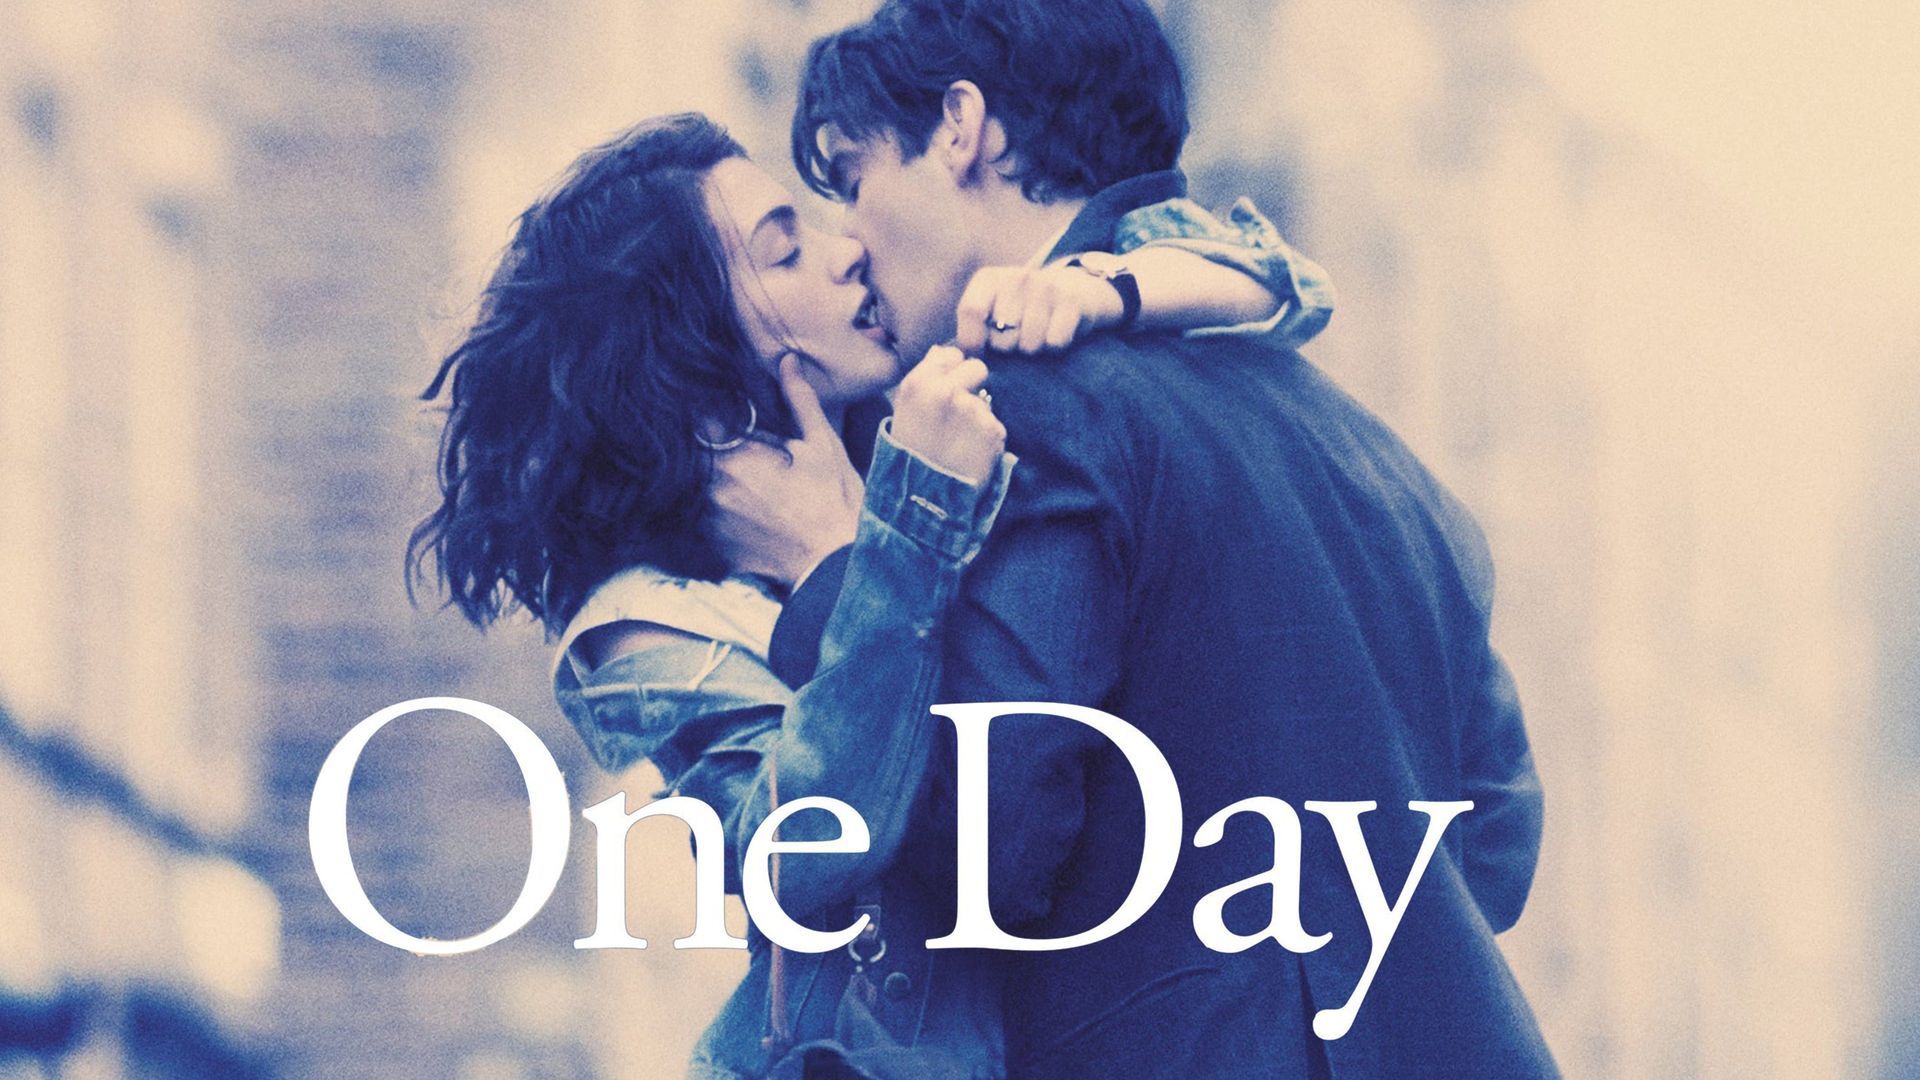 Watch One Day (2011) Full Movie Online - Plex